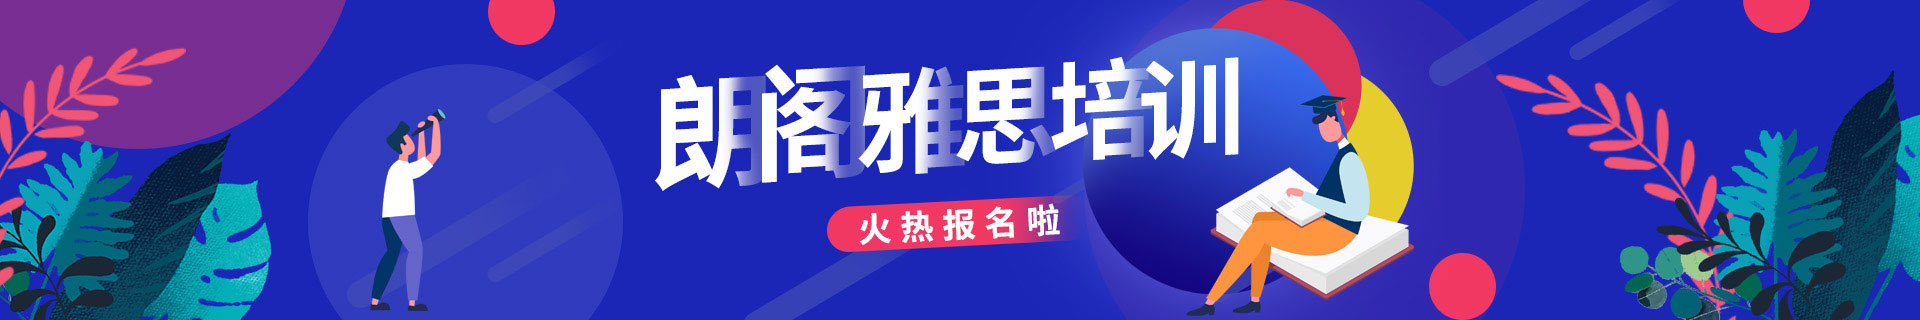 桂林秀峰區朗閣教育培訓機構